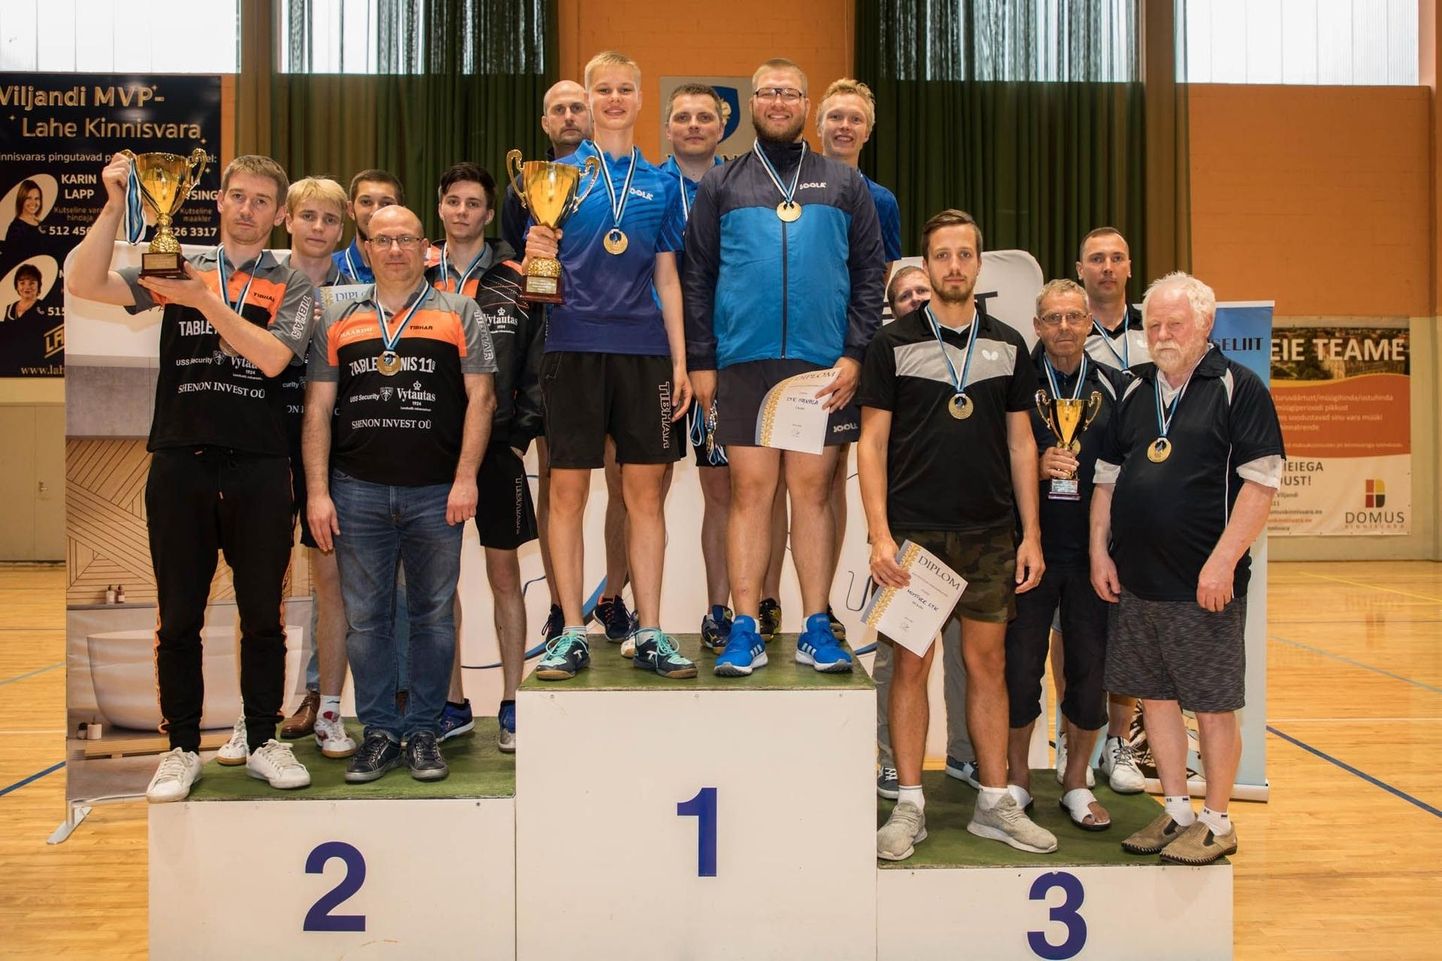 Viljandi Sakala klubi kõrgliiga meeskond sai möödunud nädalavahetusel kodulinnas peetud Eesti võistkondlikel meistrivõistlustel astuda pjedestaali kõrgeimale astmele.